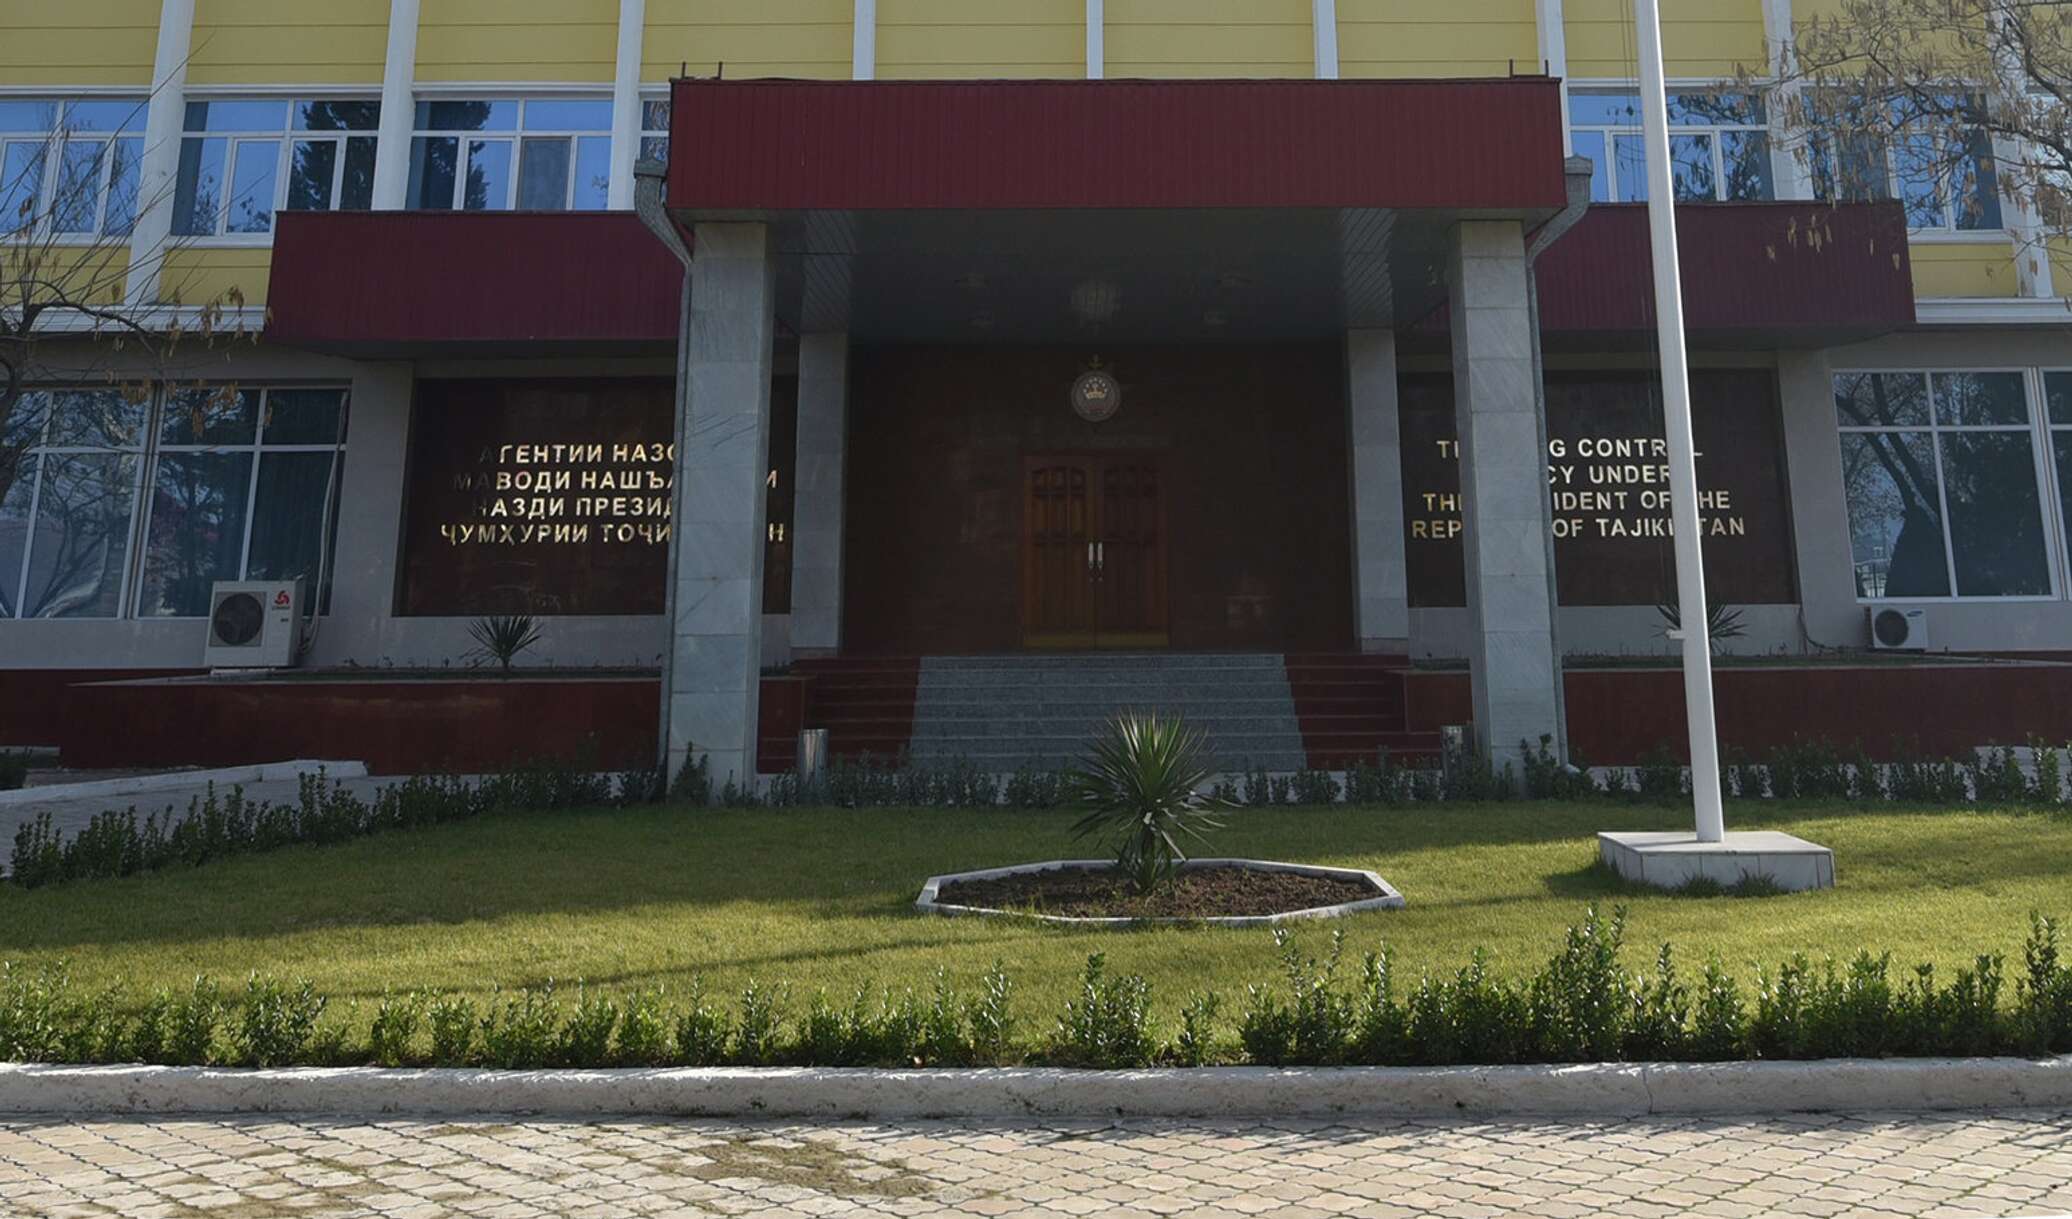 Агентство по контролю наркотиков таджикистана тор скачать торрентом браузер hyrda вход